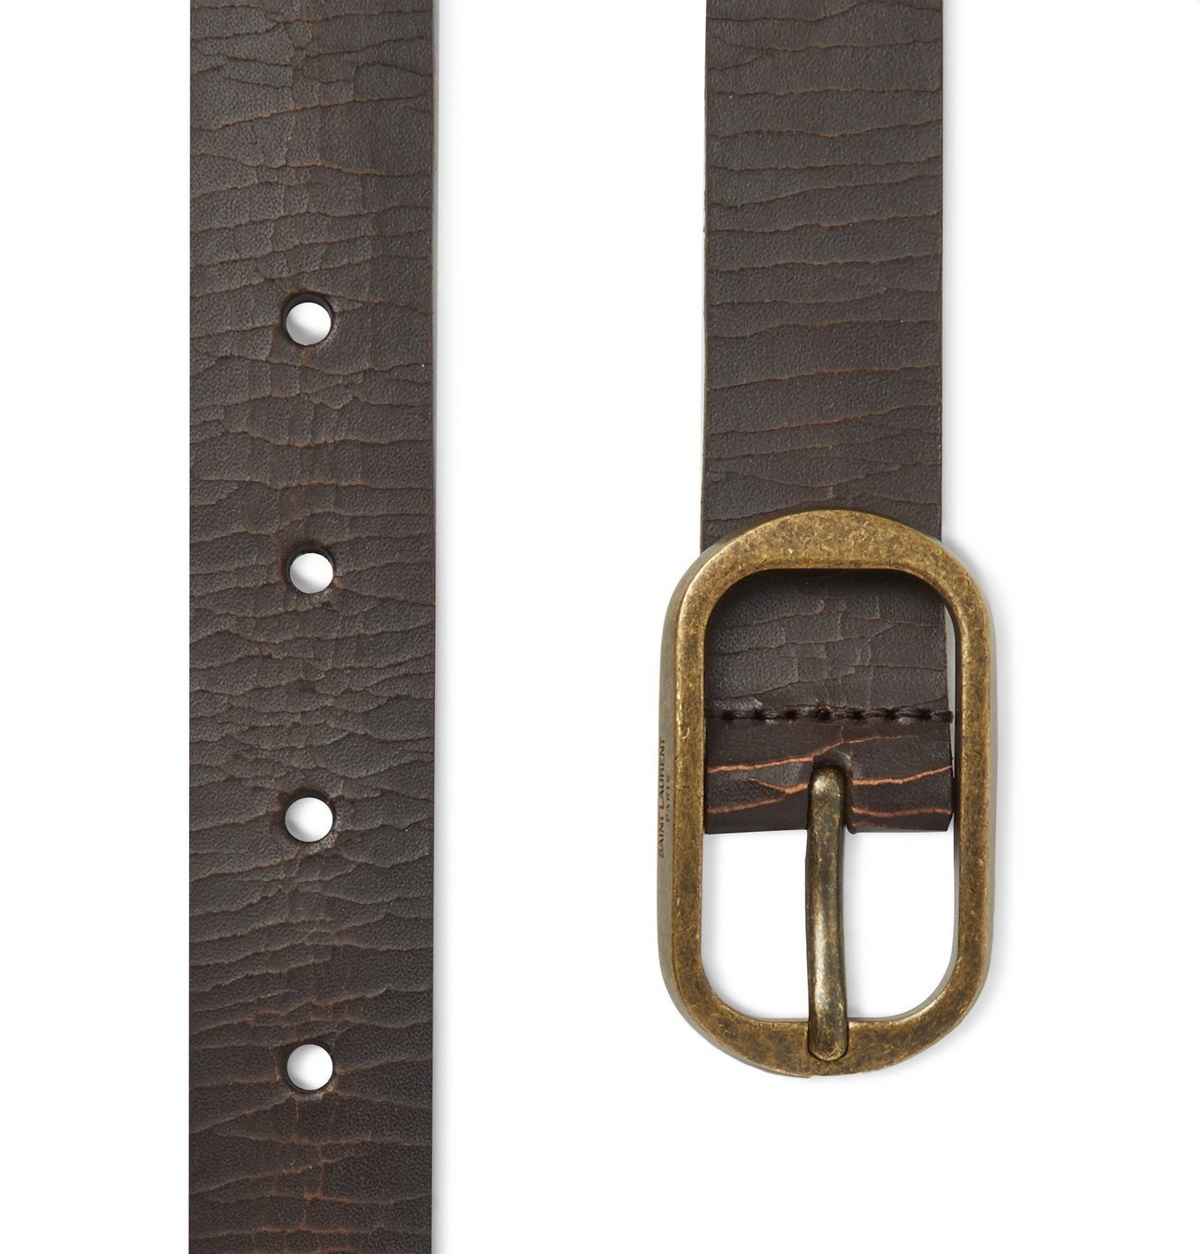 SAINT LAURENT 3cm Croc-Effect Leather Belt for Men